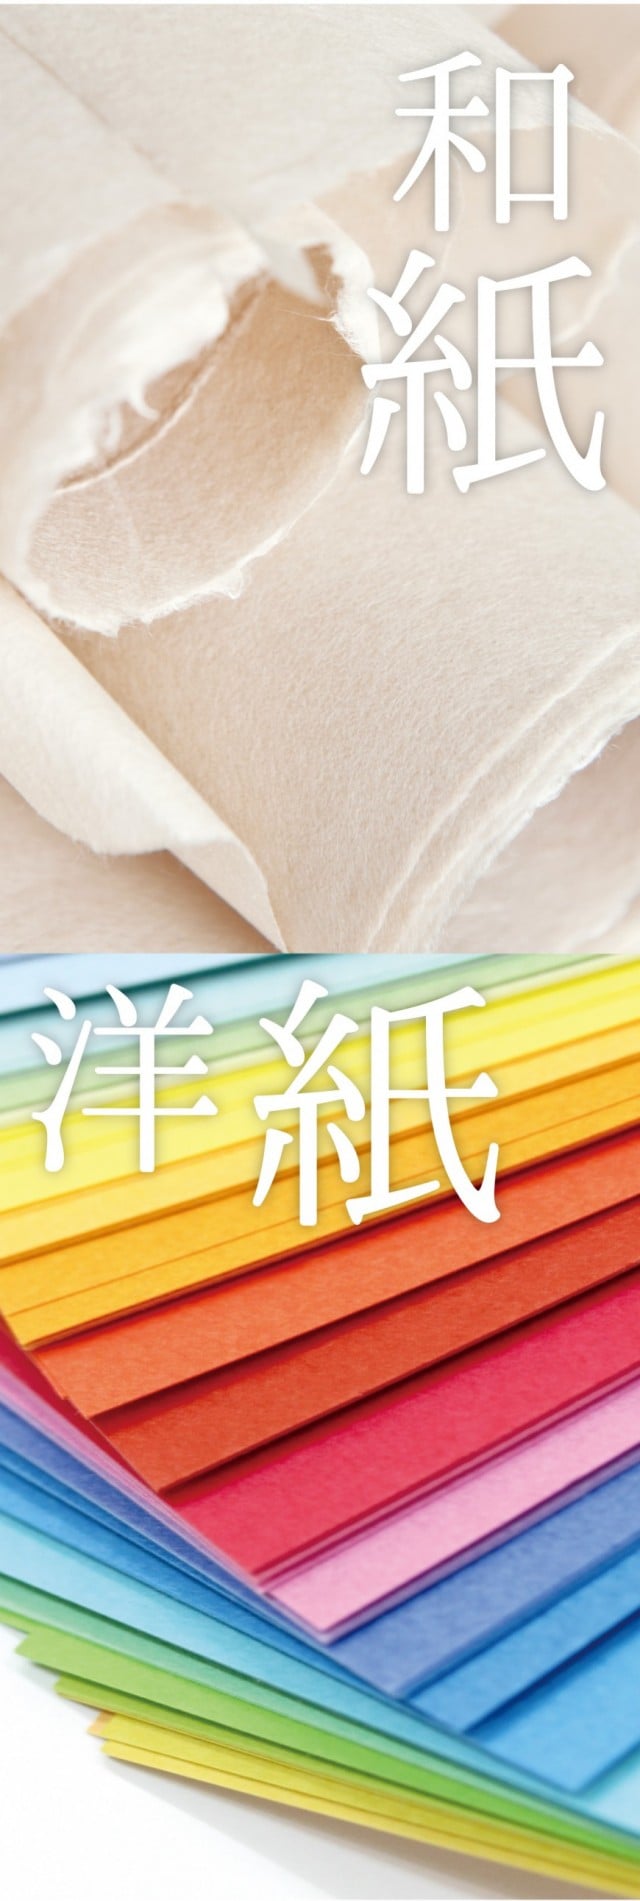 美濃和紙について 美濃和紙の文具製品やオリジナル商品の販売 企画は古川紙工